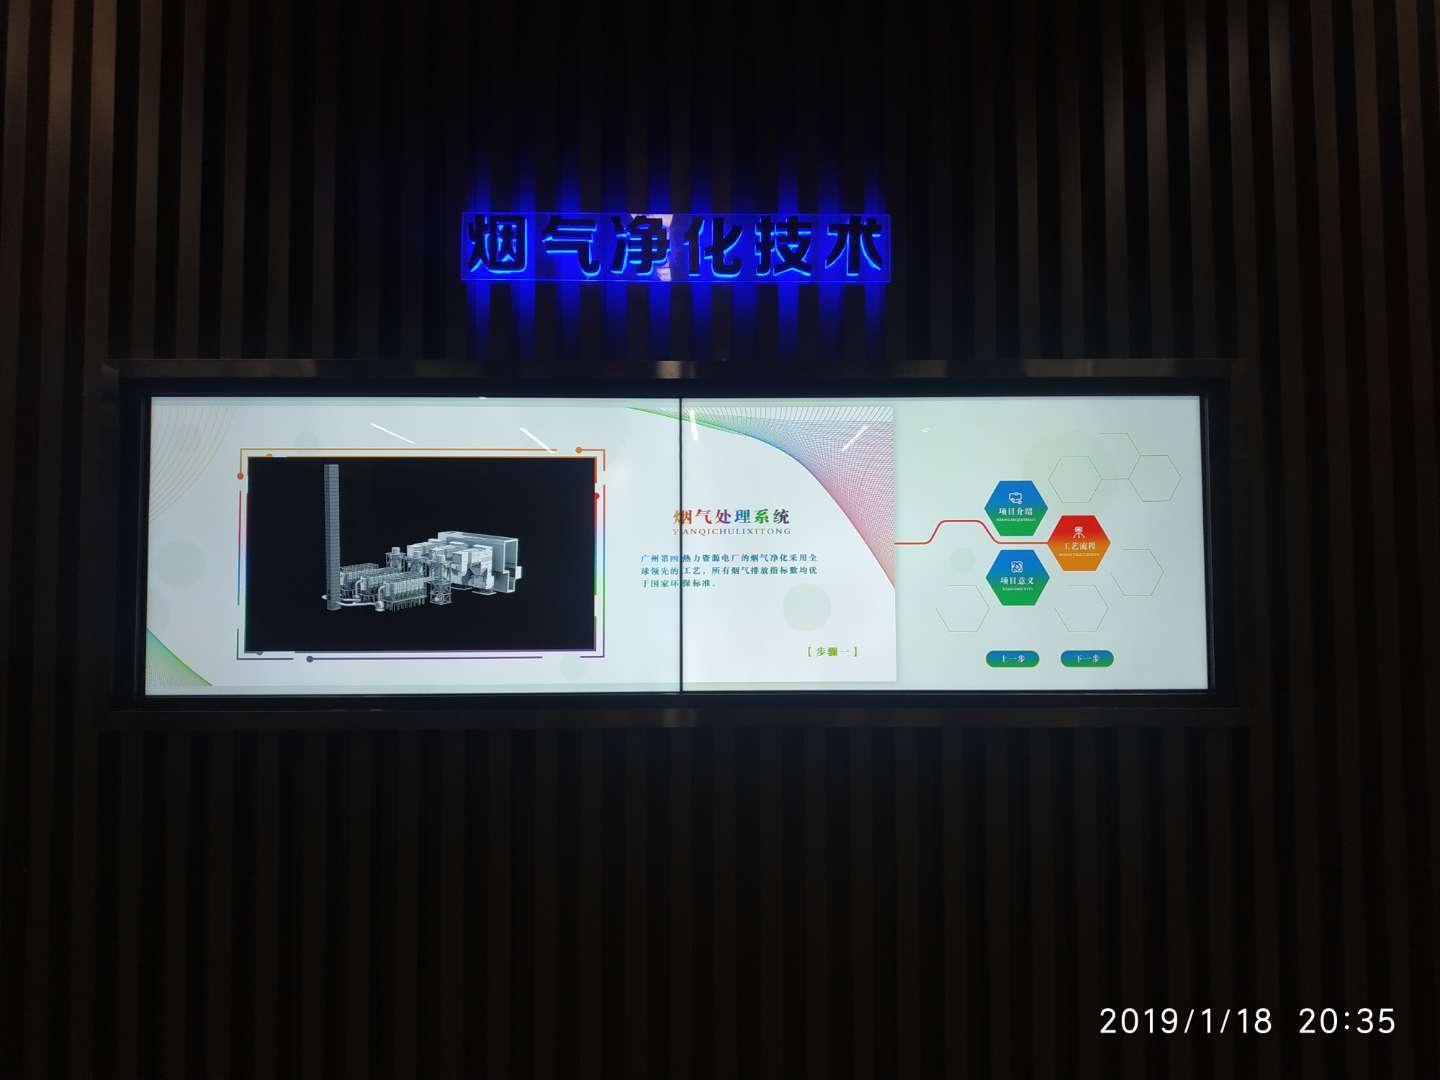  广州南沙环投发电厂展厅 